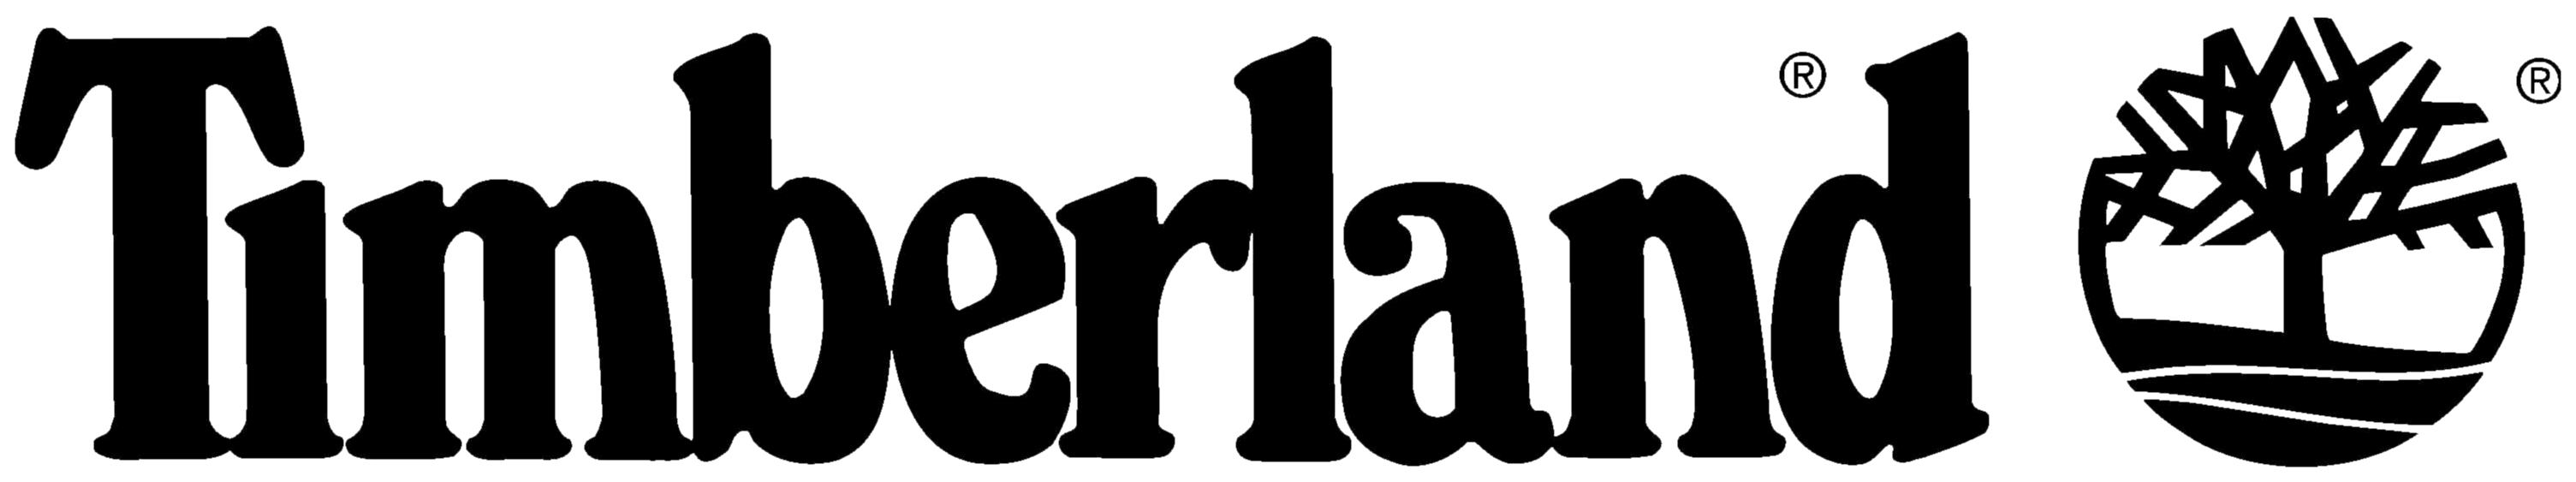 Timberland Logos